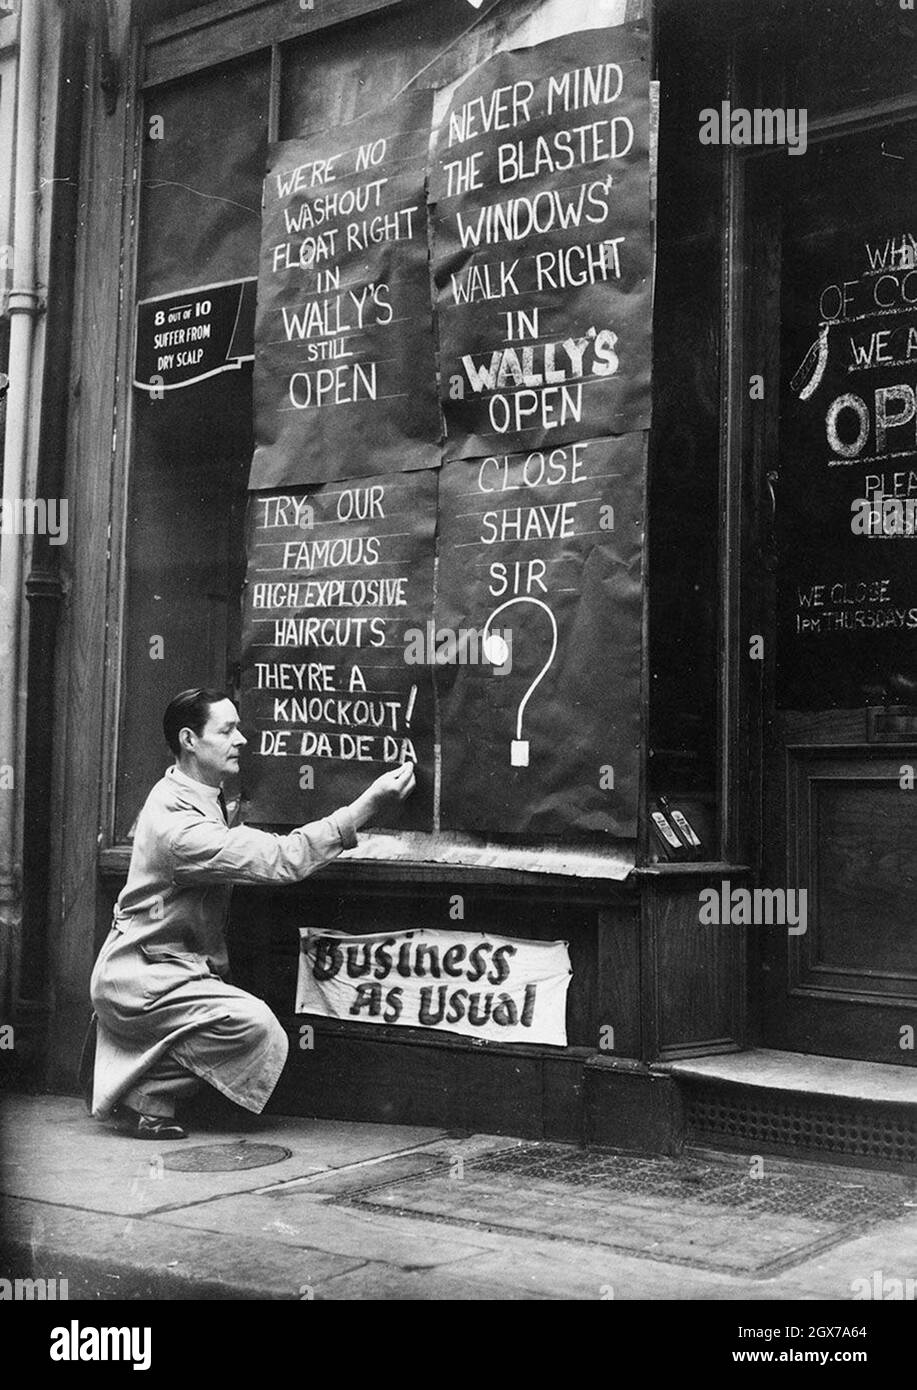 Un propriétaire d'entreprise écrivant des messages humoristiques sur son magasin pour transmettre des affaires comme d'habitude pendant le teh London Blitz. Banque D'Images